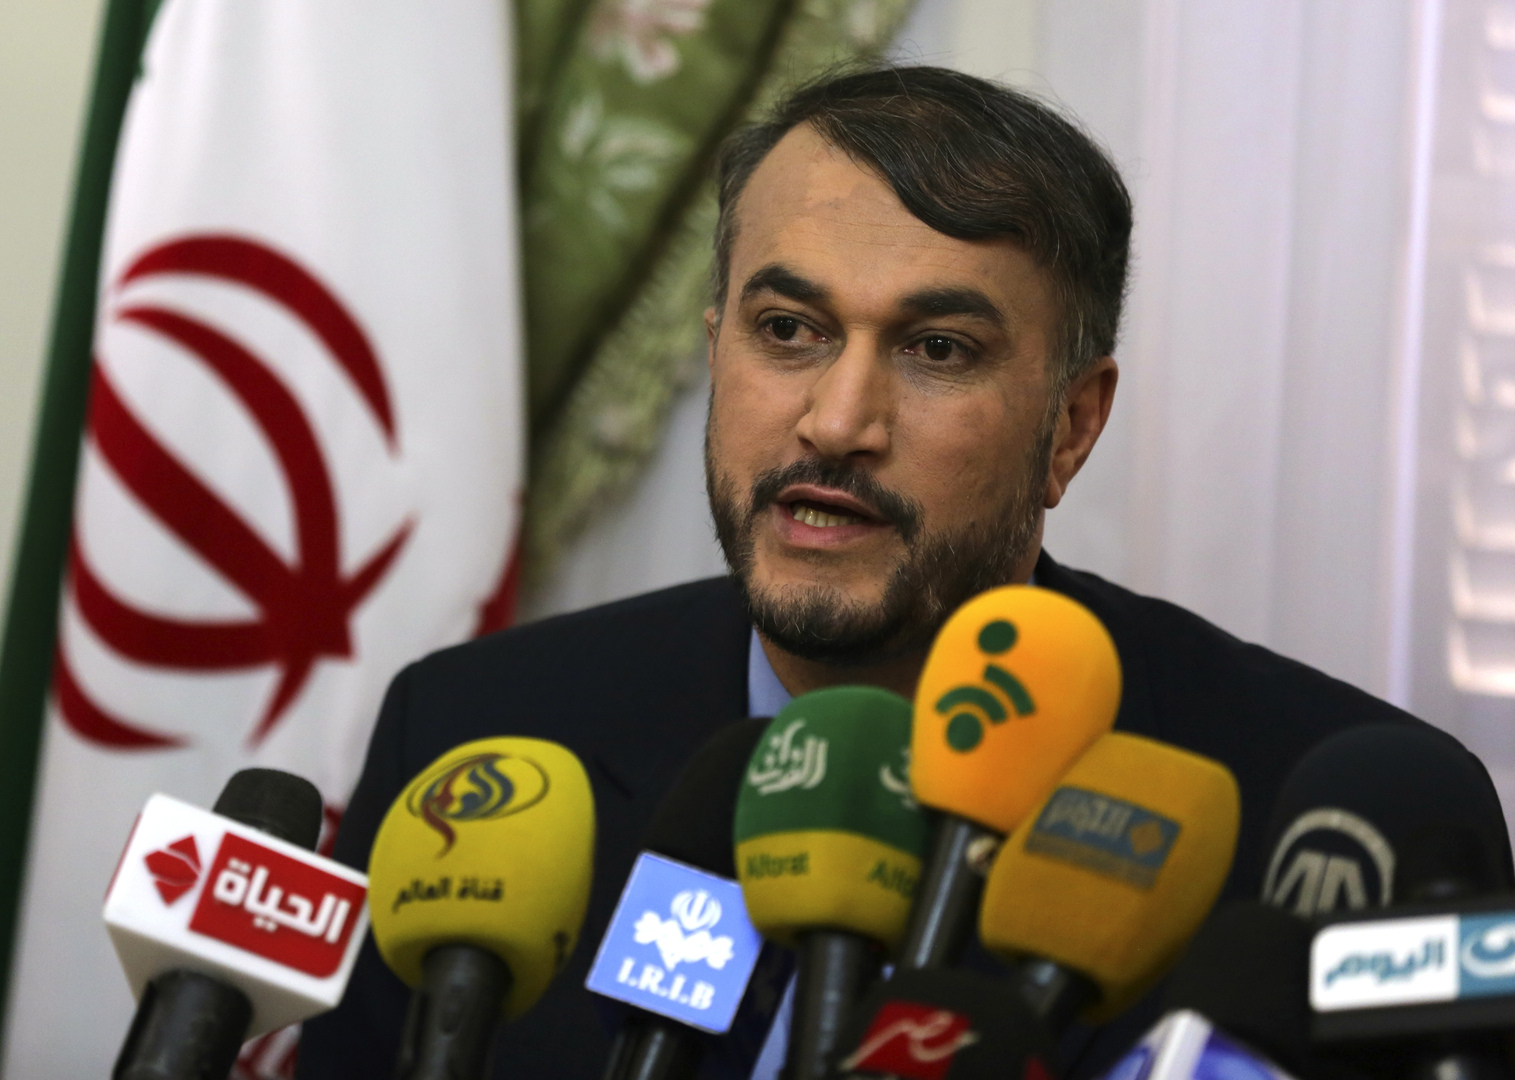 مسؤول إيراني يكشف توقعاته حول سياسة رئيسي الخارجية وما يتوجب على إدارة بايدن فعله